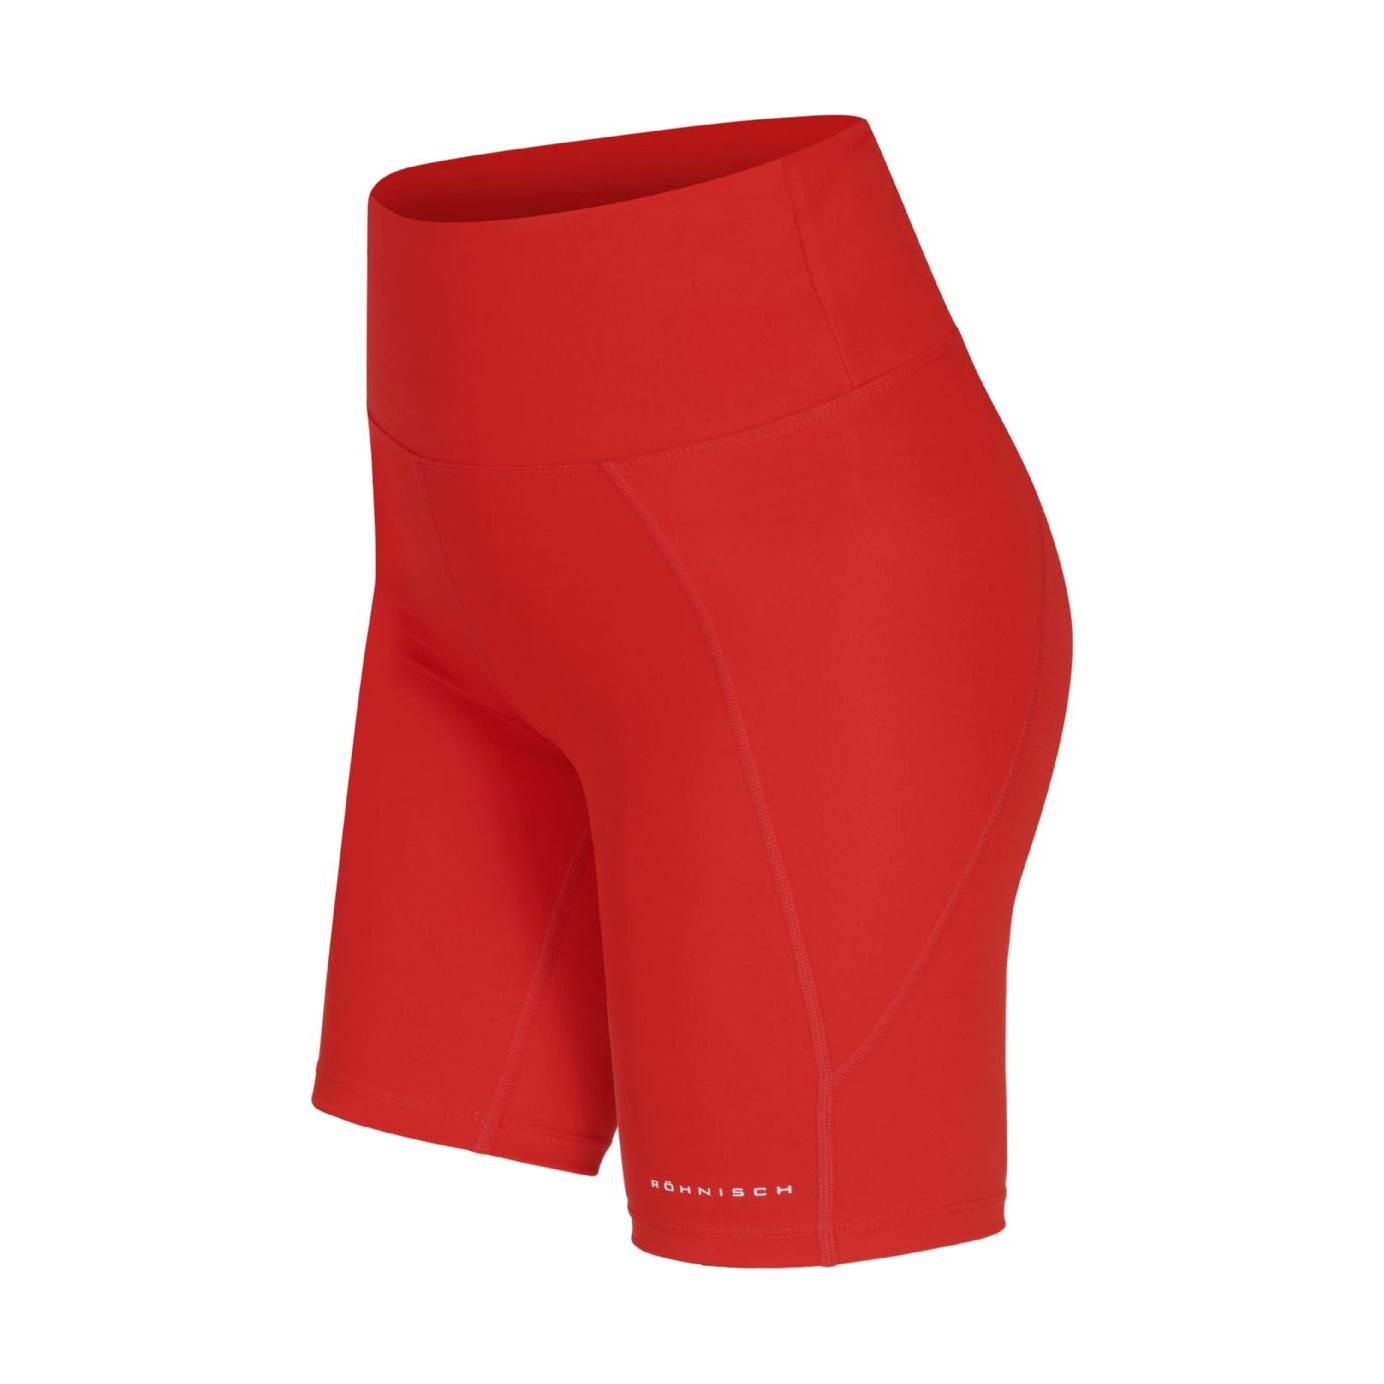 Rohnisch W Active Shorts Flattering High Waist Bike Tights, Red